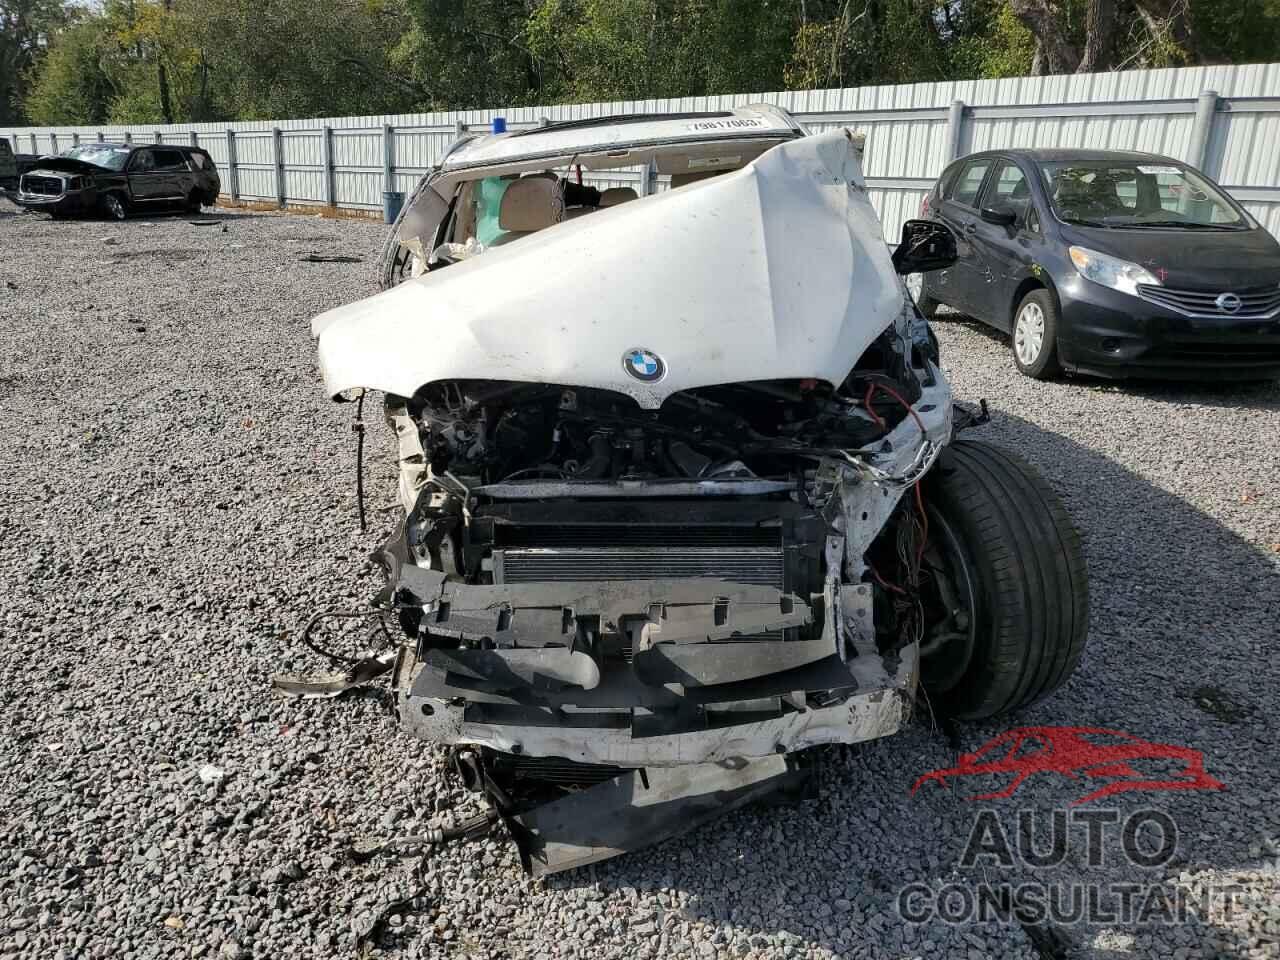 BMW X5 2016 - 5UXKR6C58G0J79891